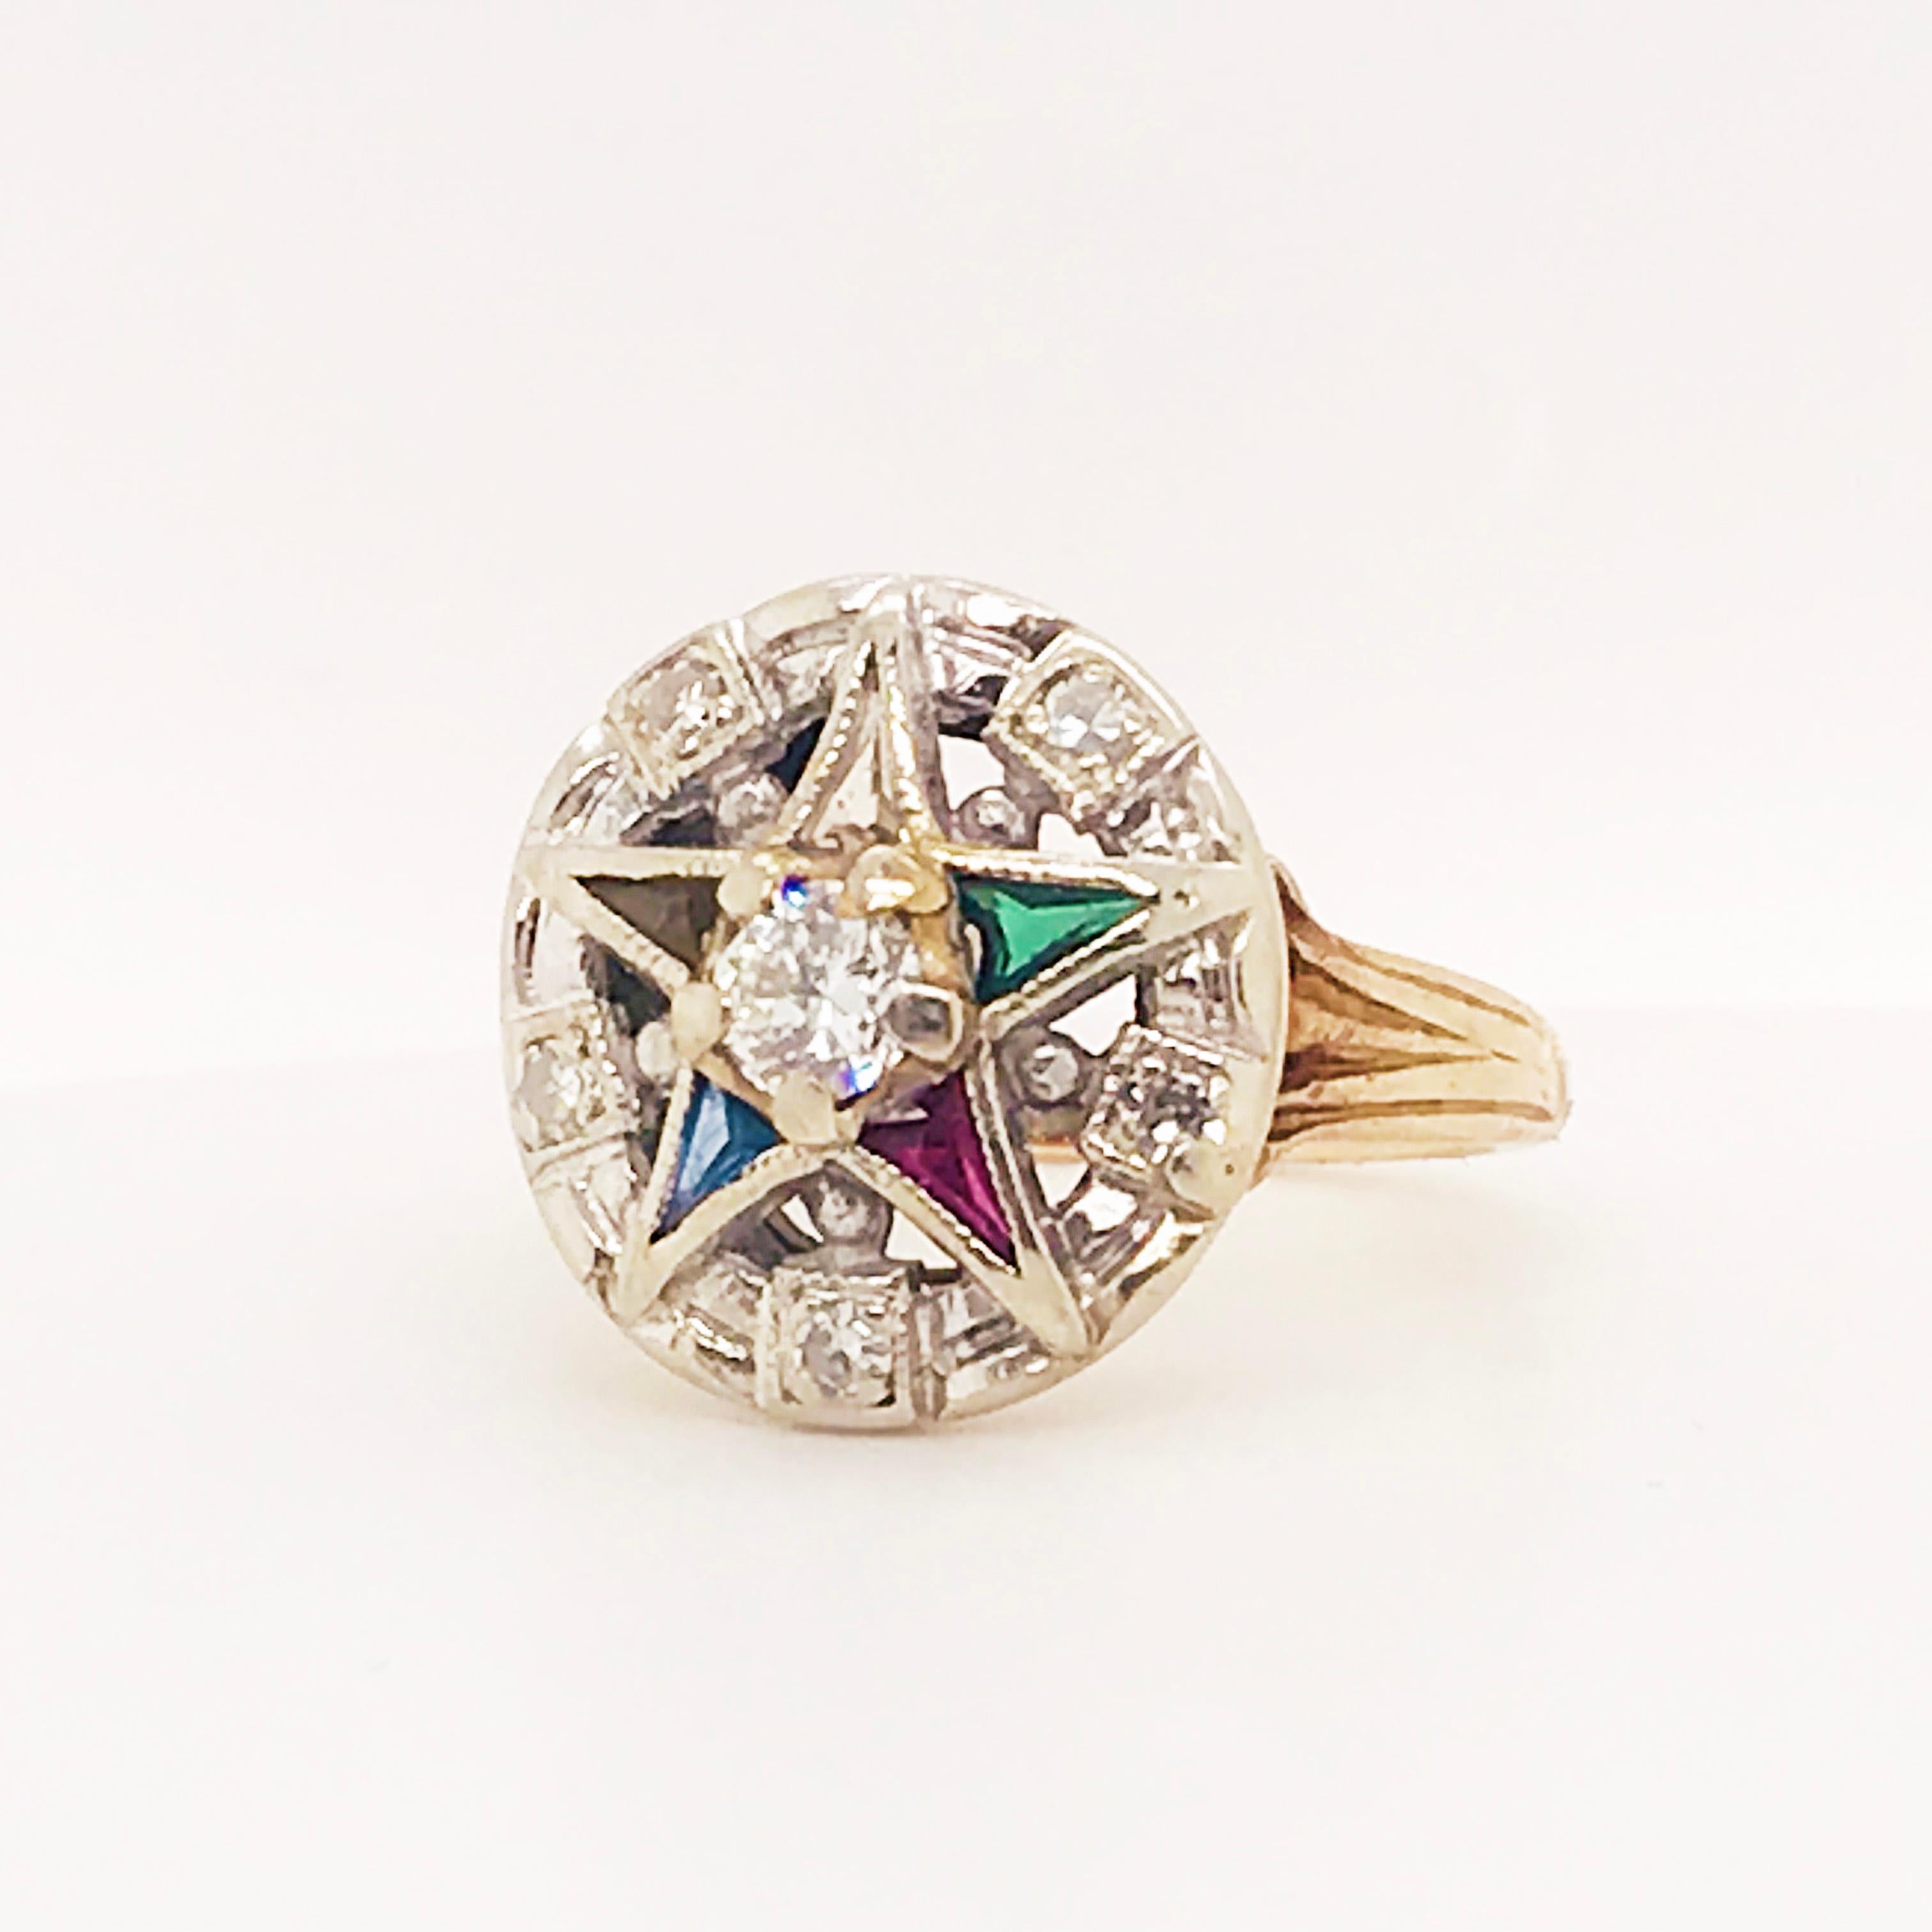 Round Cut Eastern Star Diamond and Gemstone Estate Ring 14 Karat Gold Spiritual Star Ring